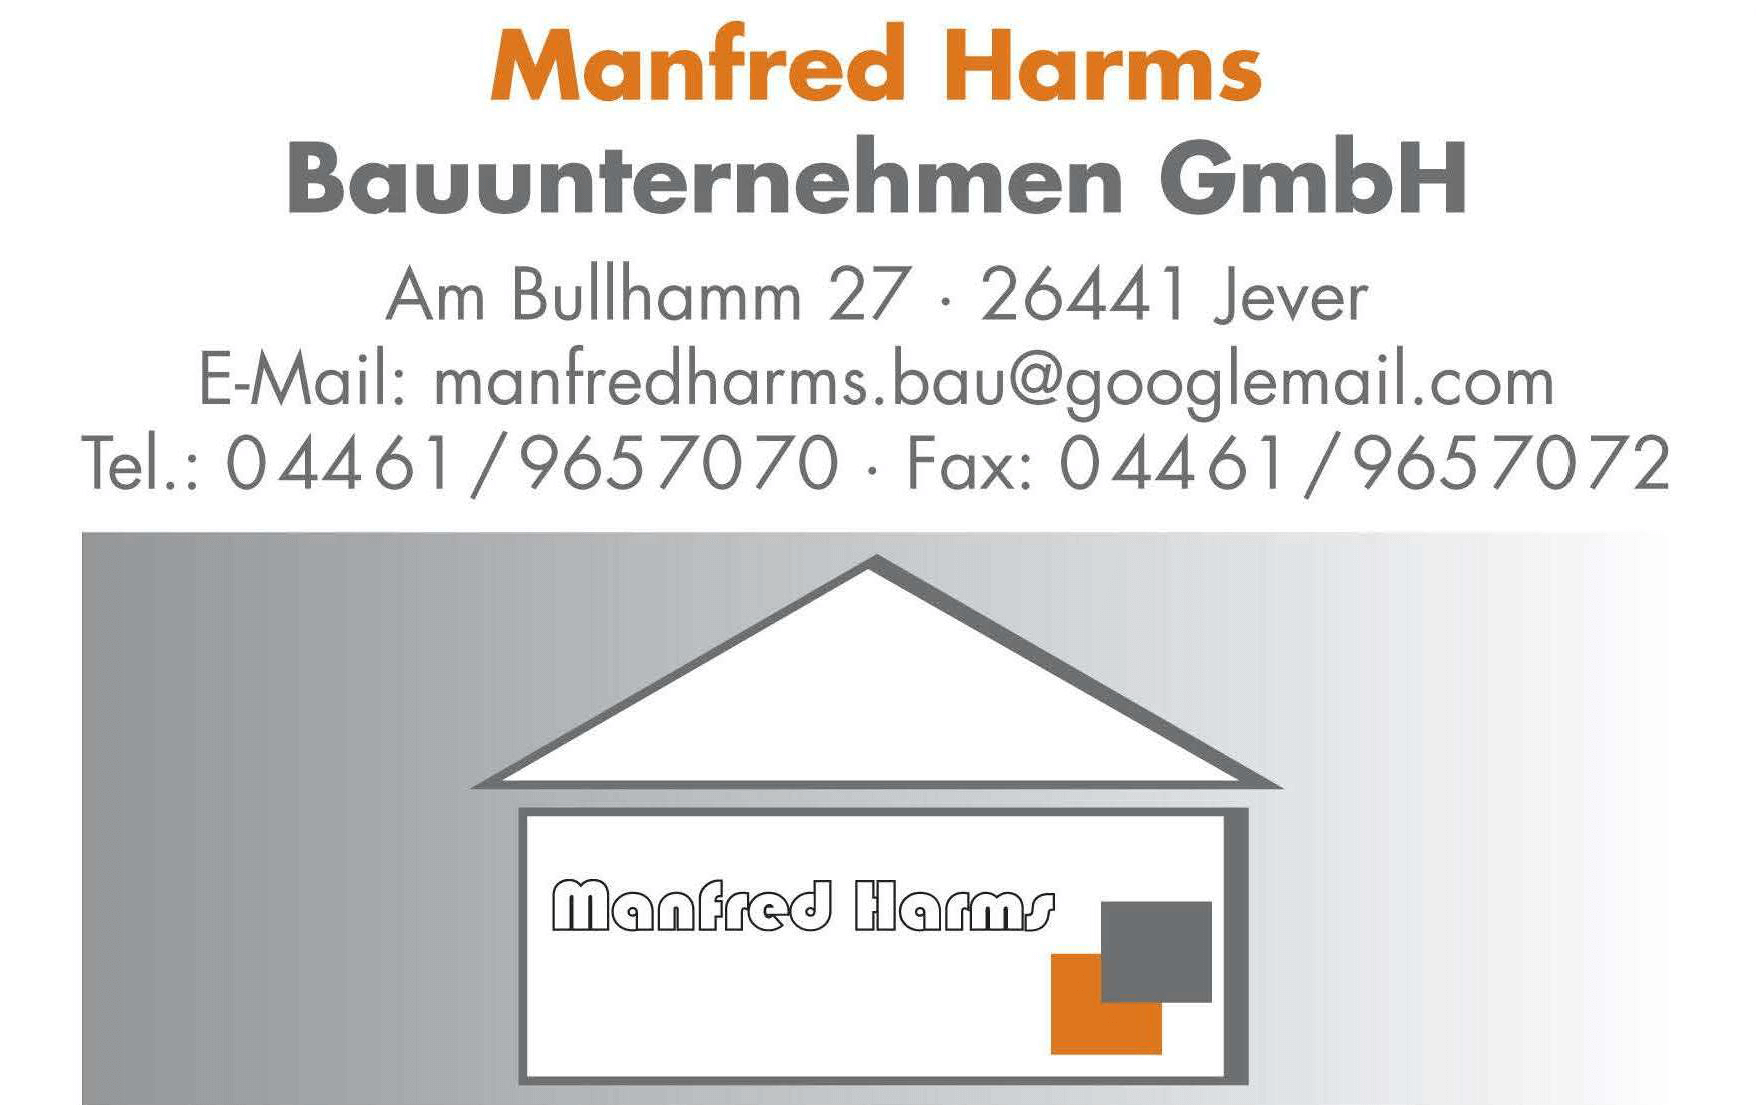 Manfred Harms Bauunternehmen GmbH